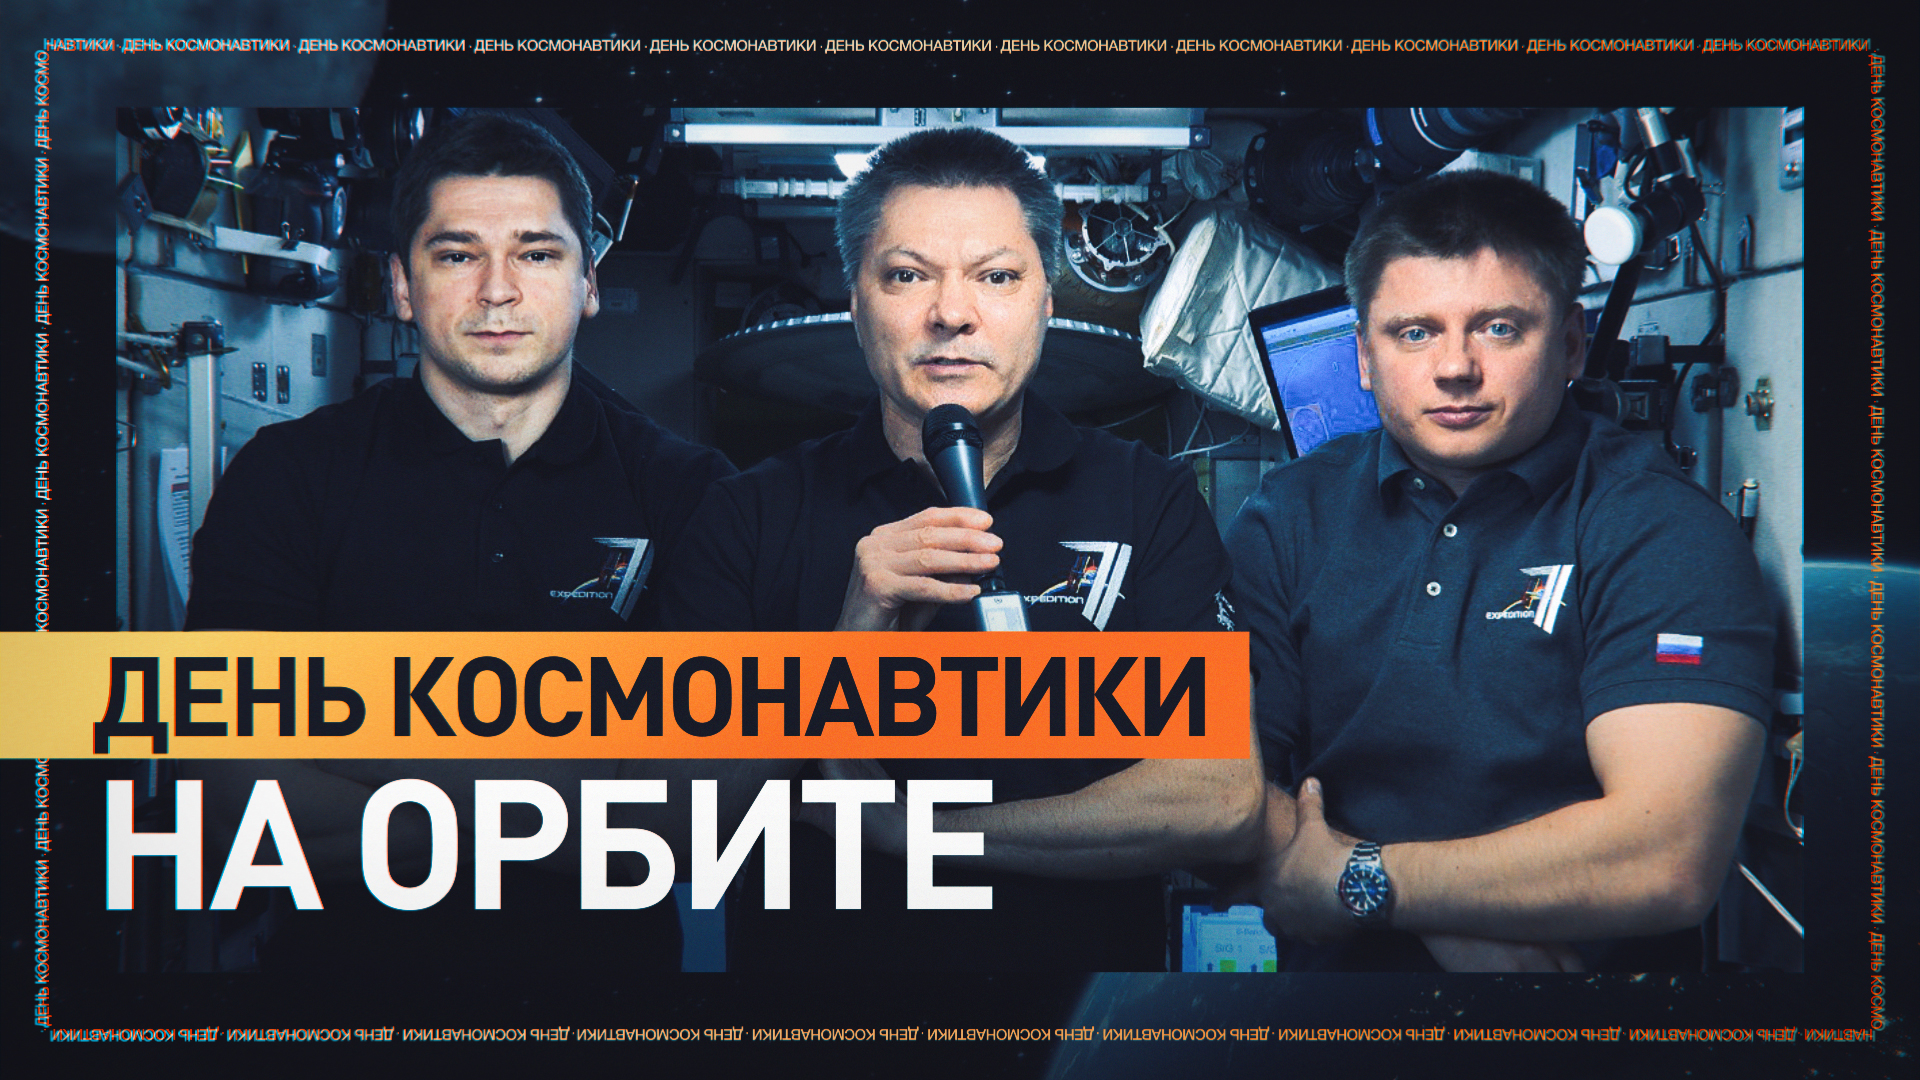 Российский экипаж МКС поздравил россиян с Днём космонавтики — видео